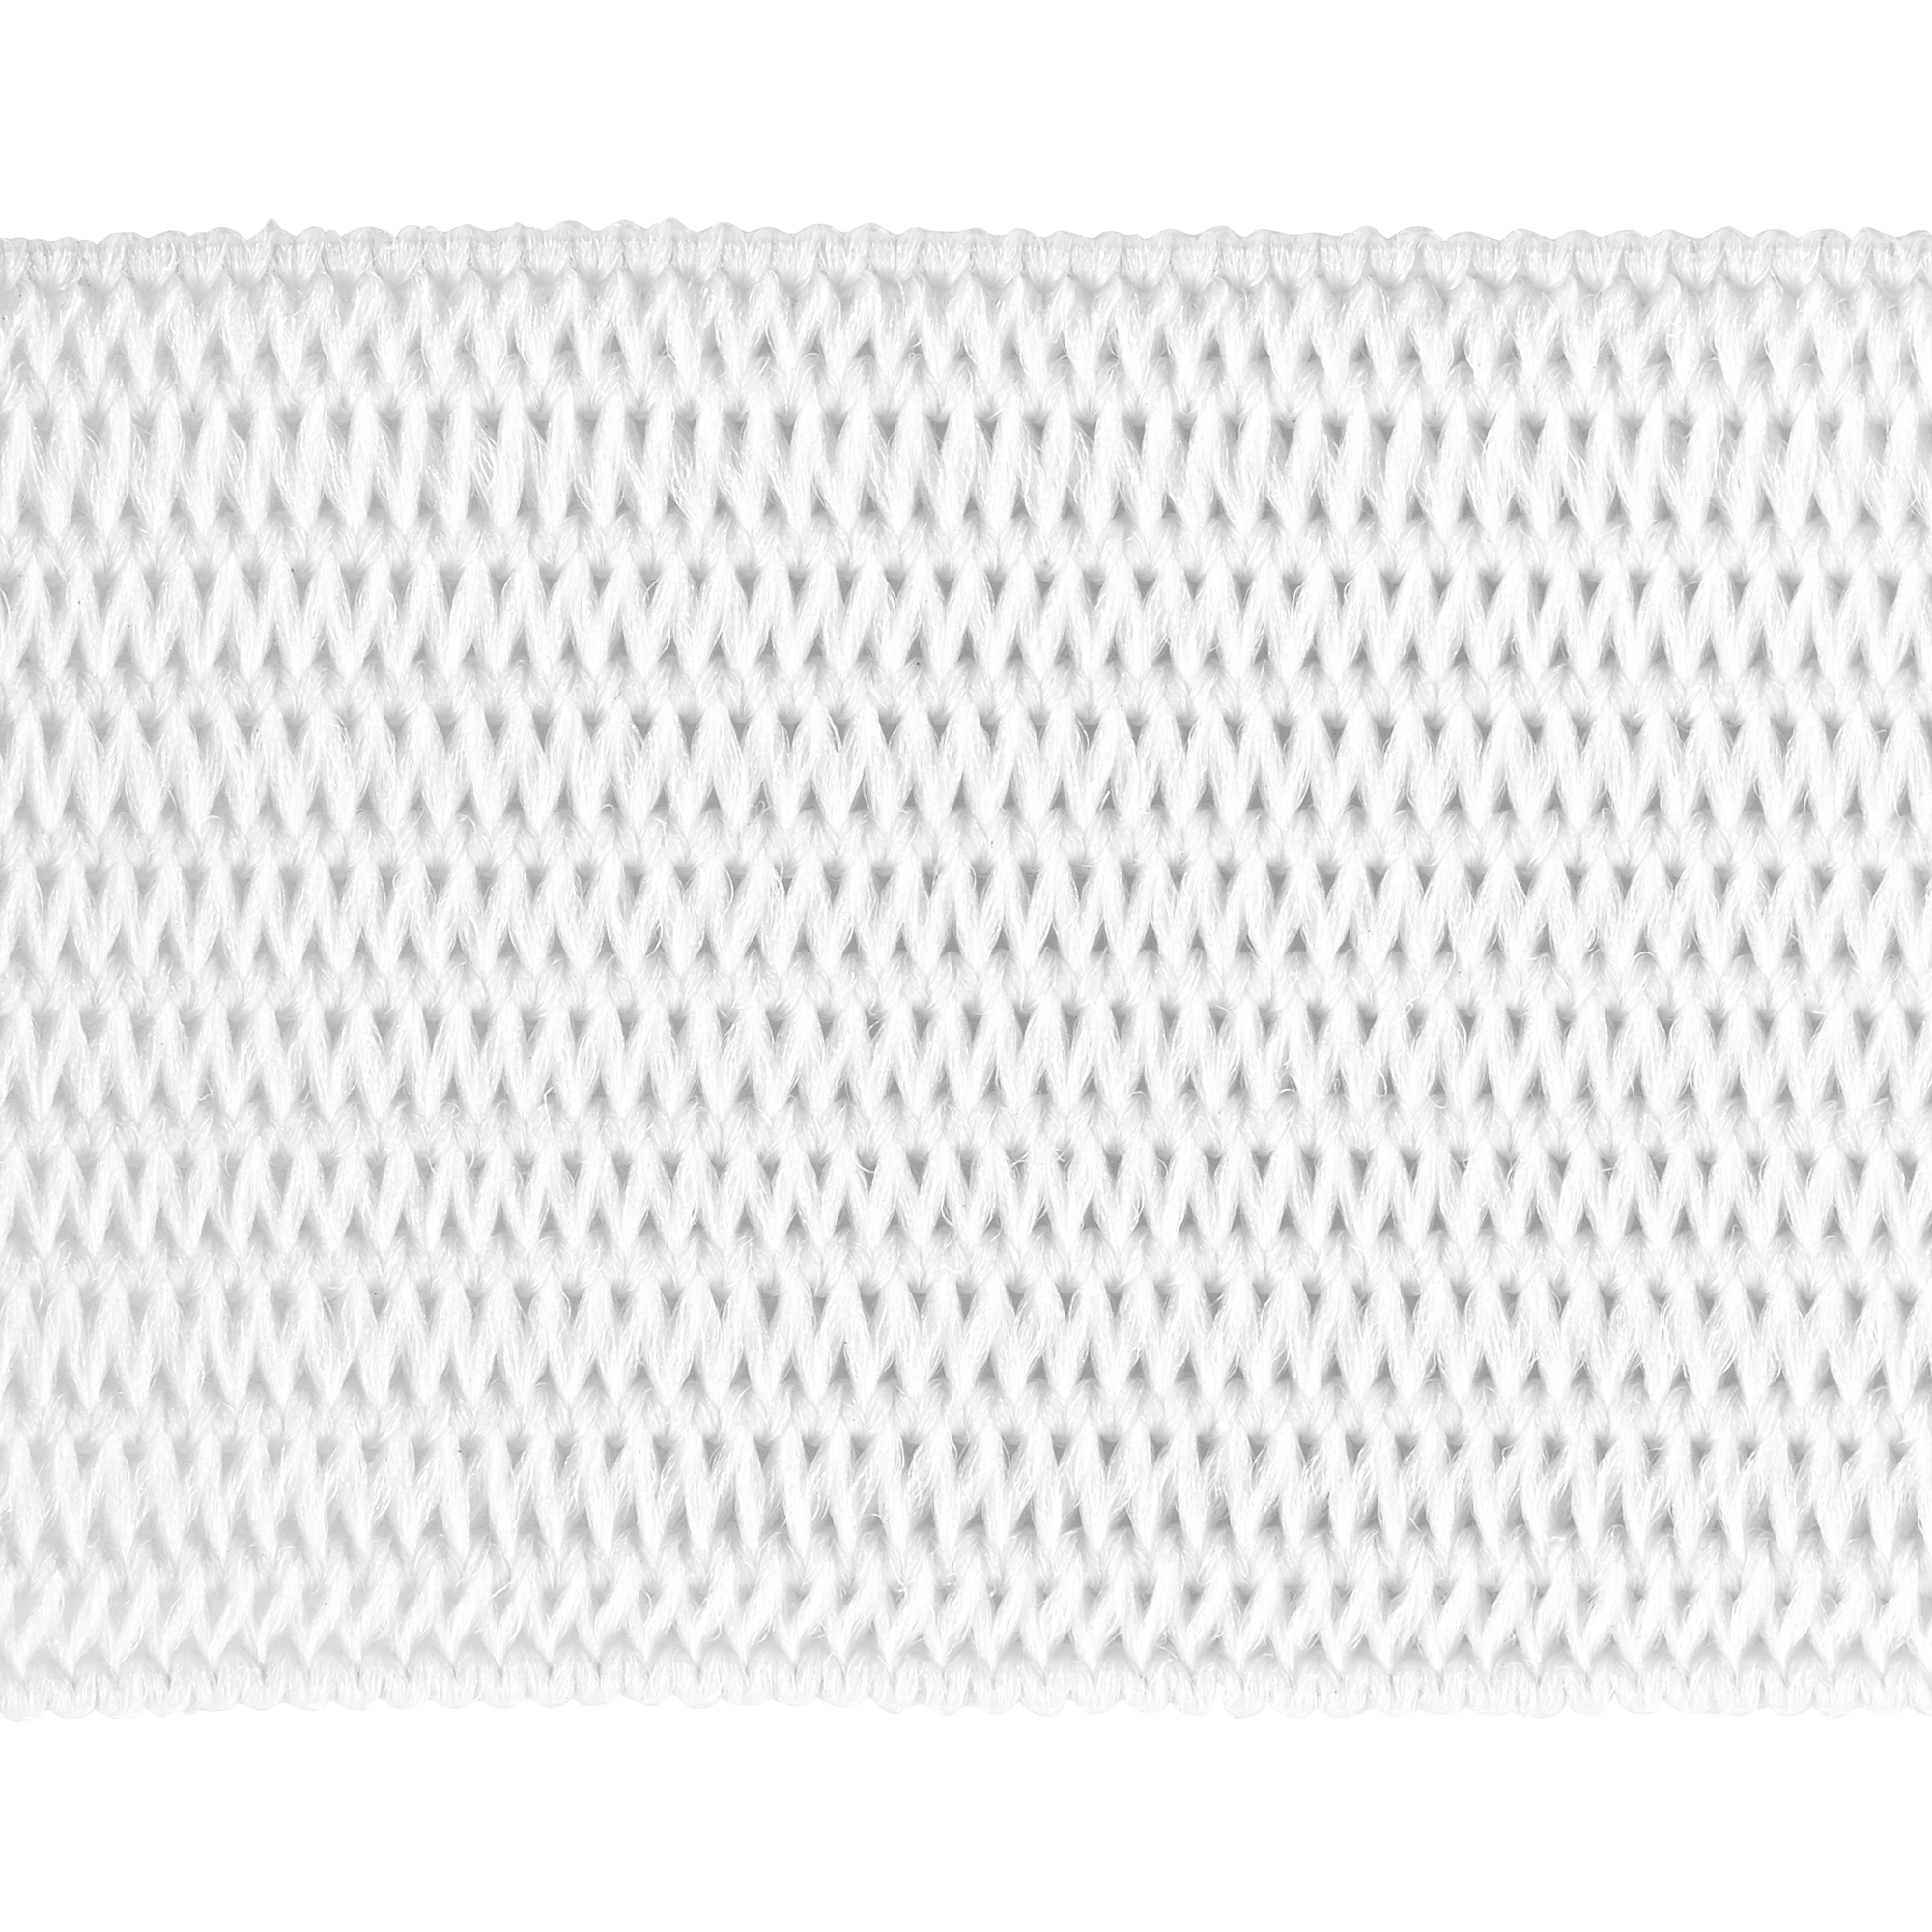 Gummilitze / Gummiband Weiss15 mm x 50 m auf einer Spule - H. DUSCHA OHG ·  Hilgerstr. 21 · 45141 Essen · Tel.: 0201/23 63 22